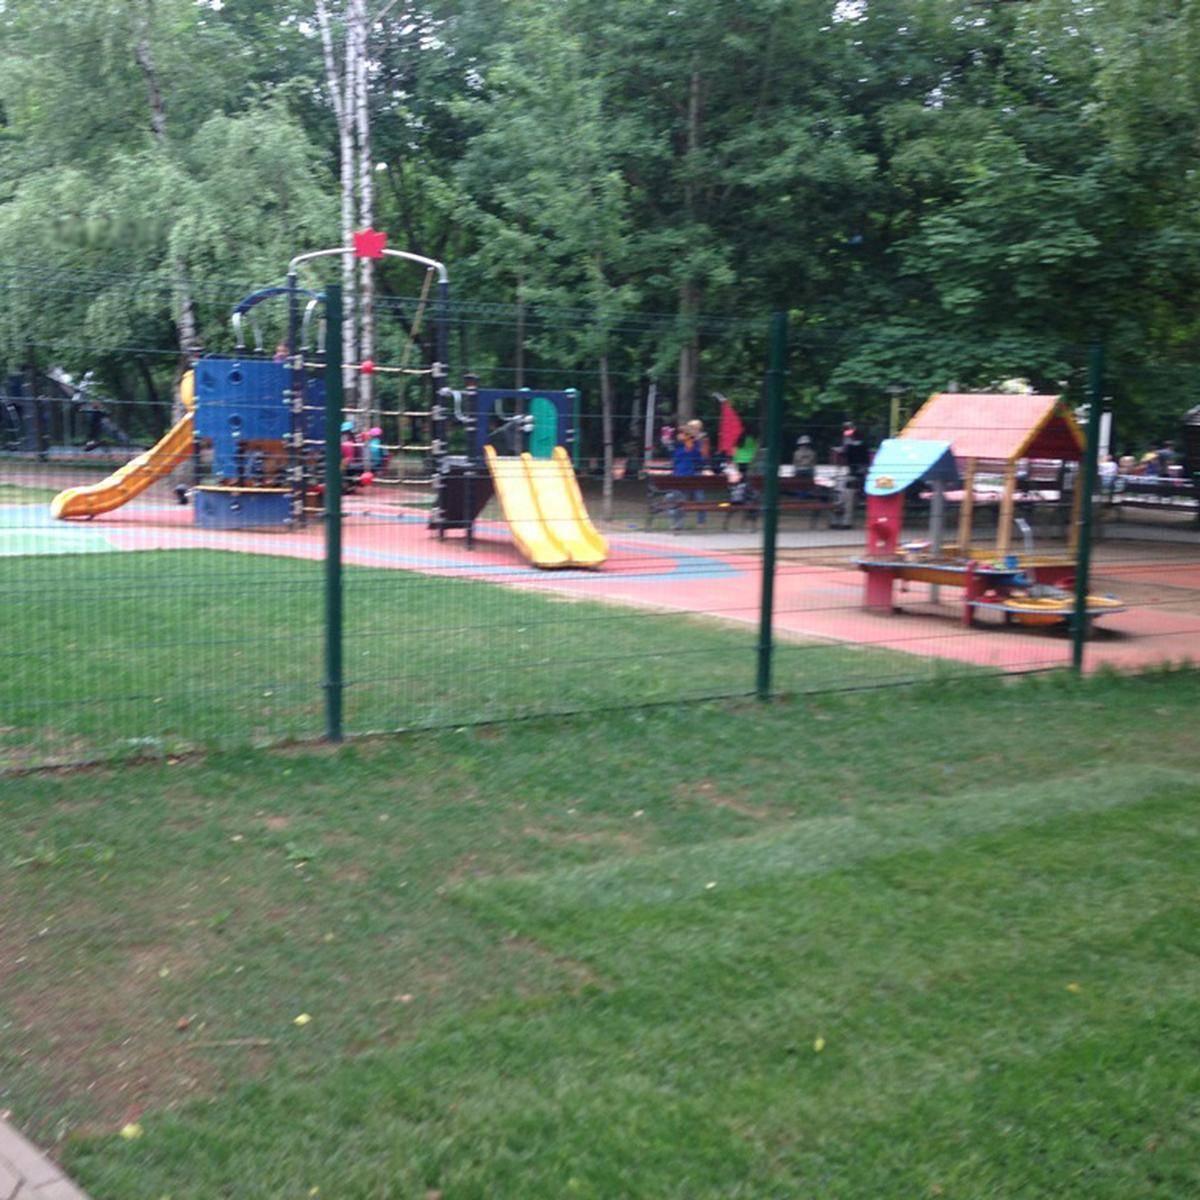 Фото: Детская игровая площадка № 1 в парке Кузьминки